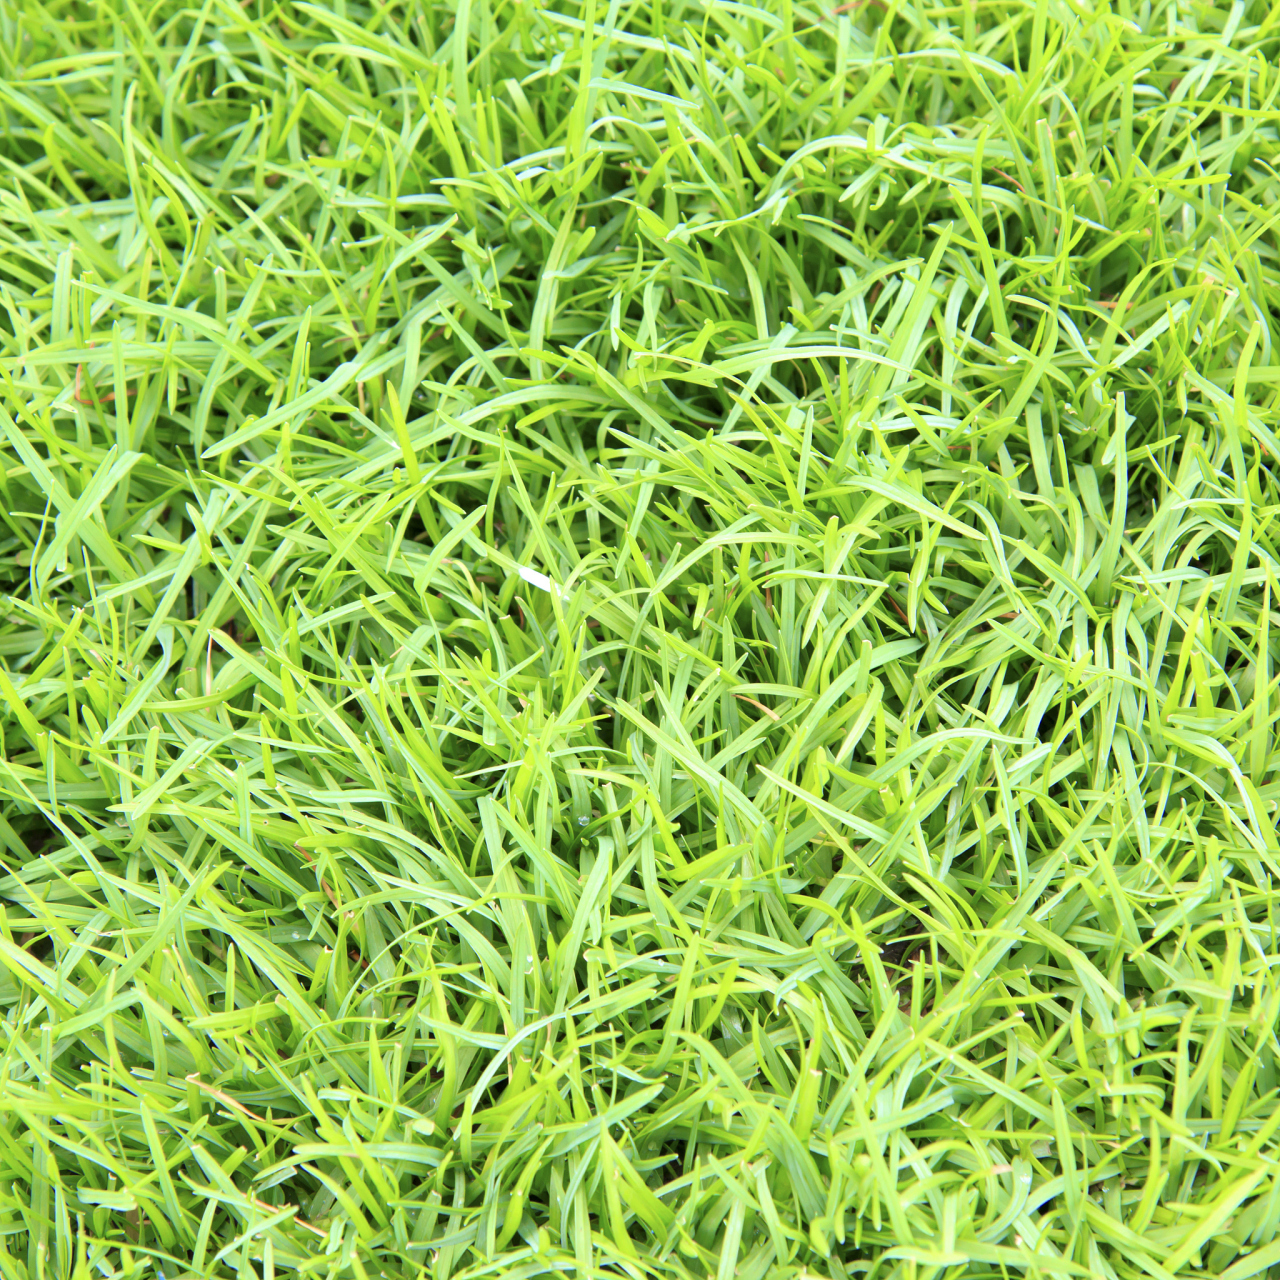 狗牙根草种植方法  狗牙根草是一种常见的多年生草本植物,以下是狗牙